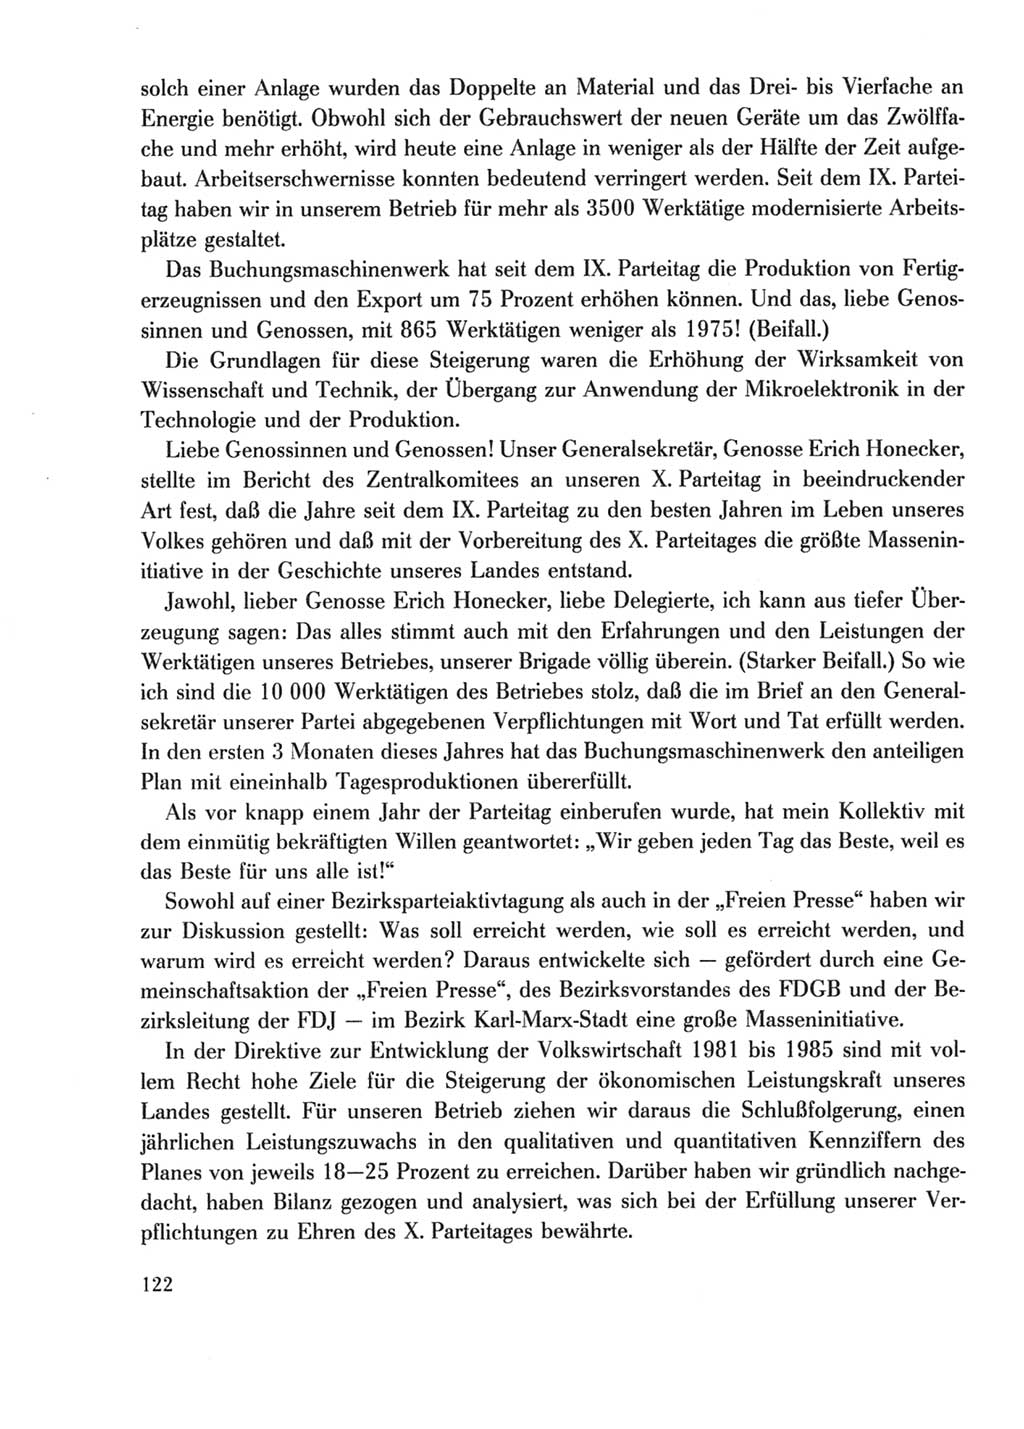 Protokoll der Verhandlungen des Ⅹ. Parteitages der Sozialistischen Einheitspartei Deutschlands (SED) [Deutsche Demokratische Republik (DDR)] 1981, Band 2, Seite 122 (Prot. Verh. Ⅹ. PT SED DDR 1981, Bd. 2, S. 122)